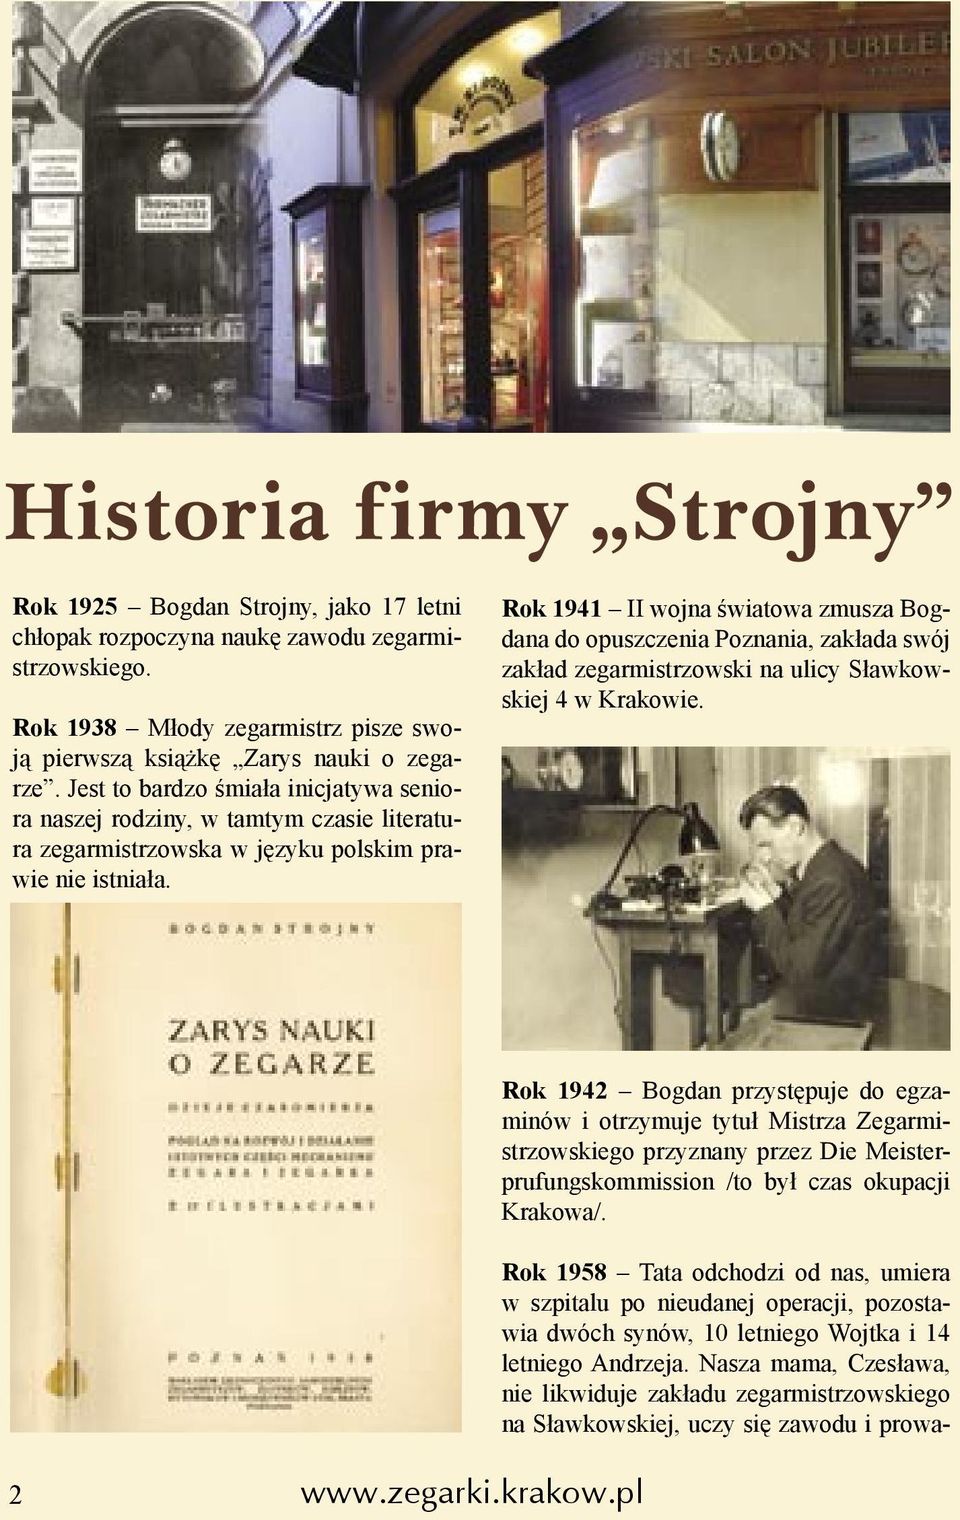 Rok 1941 II wojna światowa zmusza Bogdana do opuszczenia Poznania, zakłada swój zakład zegarmistrzowski na ulicy Sławkowskiej 4 w Krakowie.